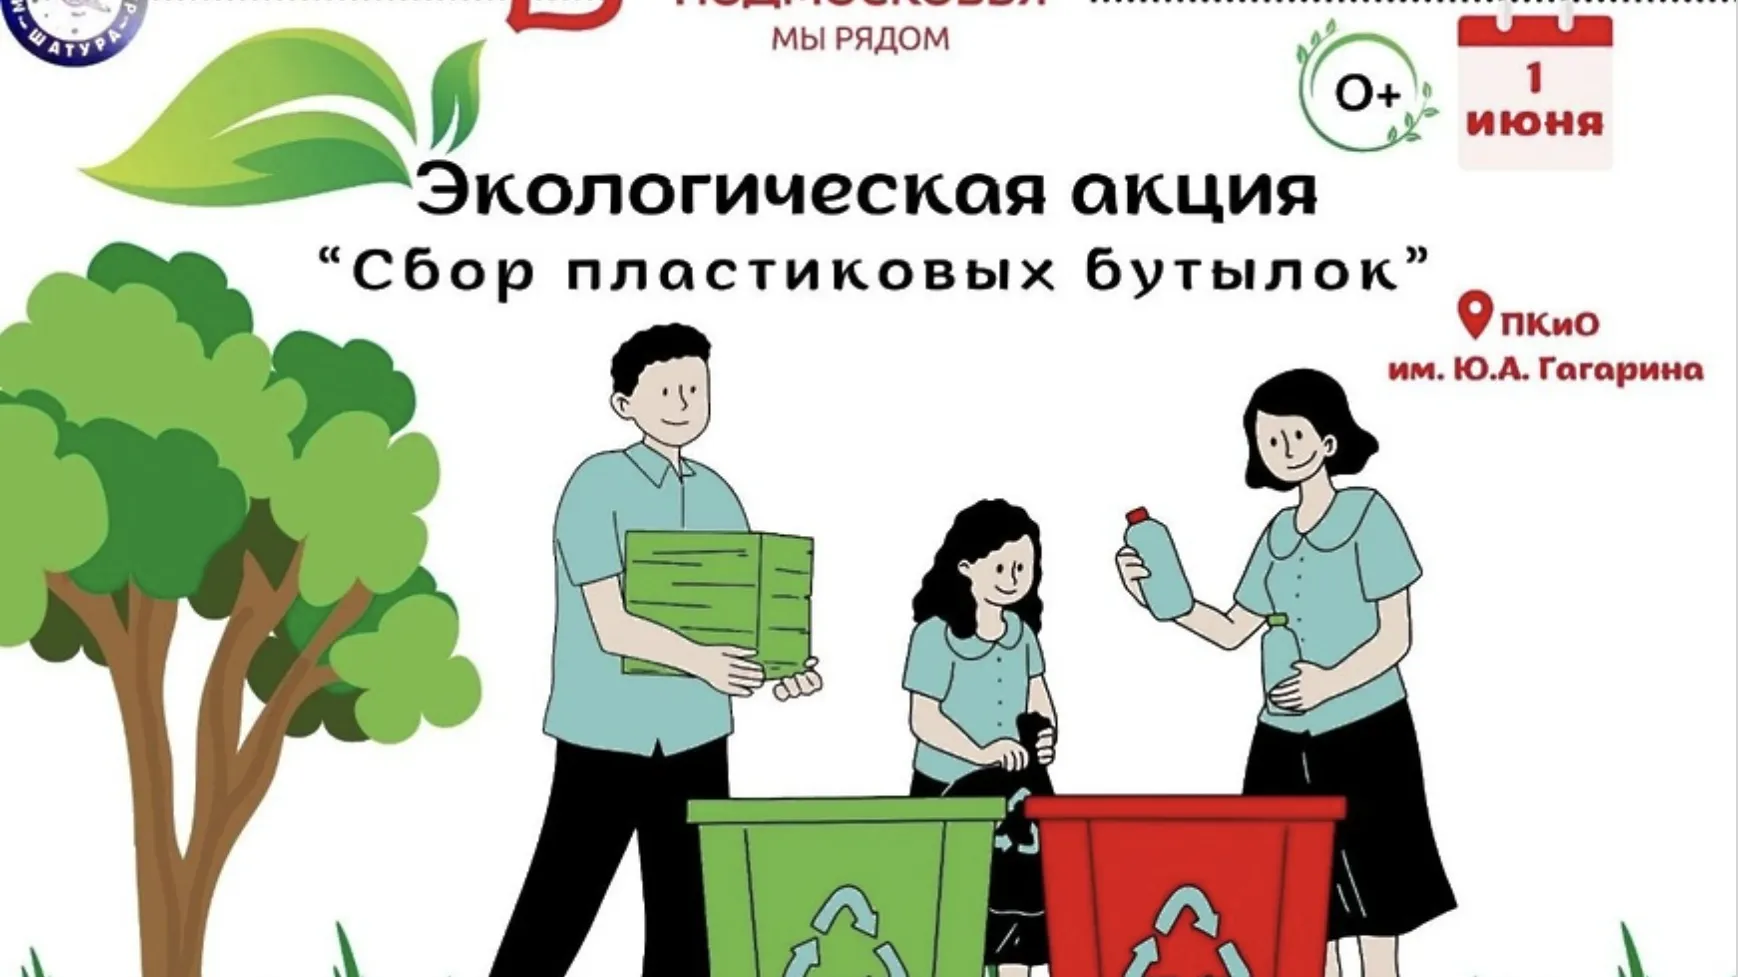 Экоакция по сбору пластиковых бутылок пройдет в парке Шатуры 1 июня